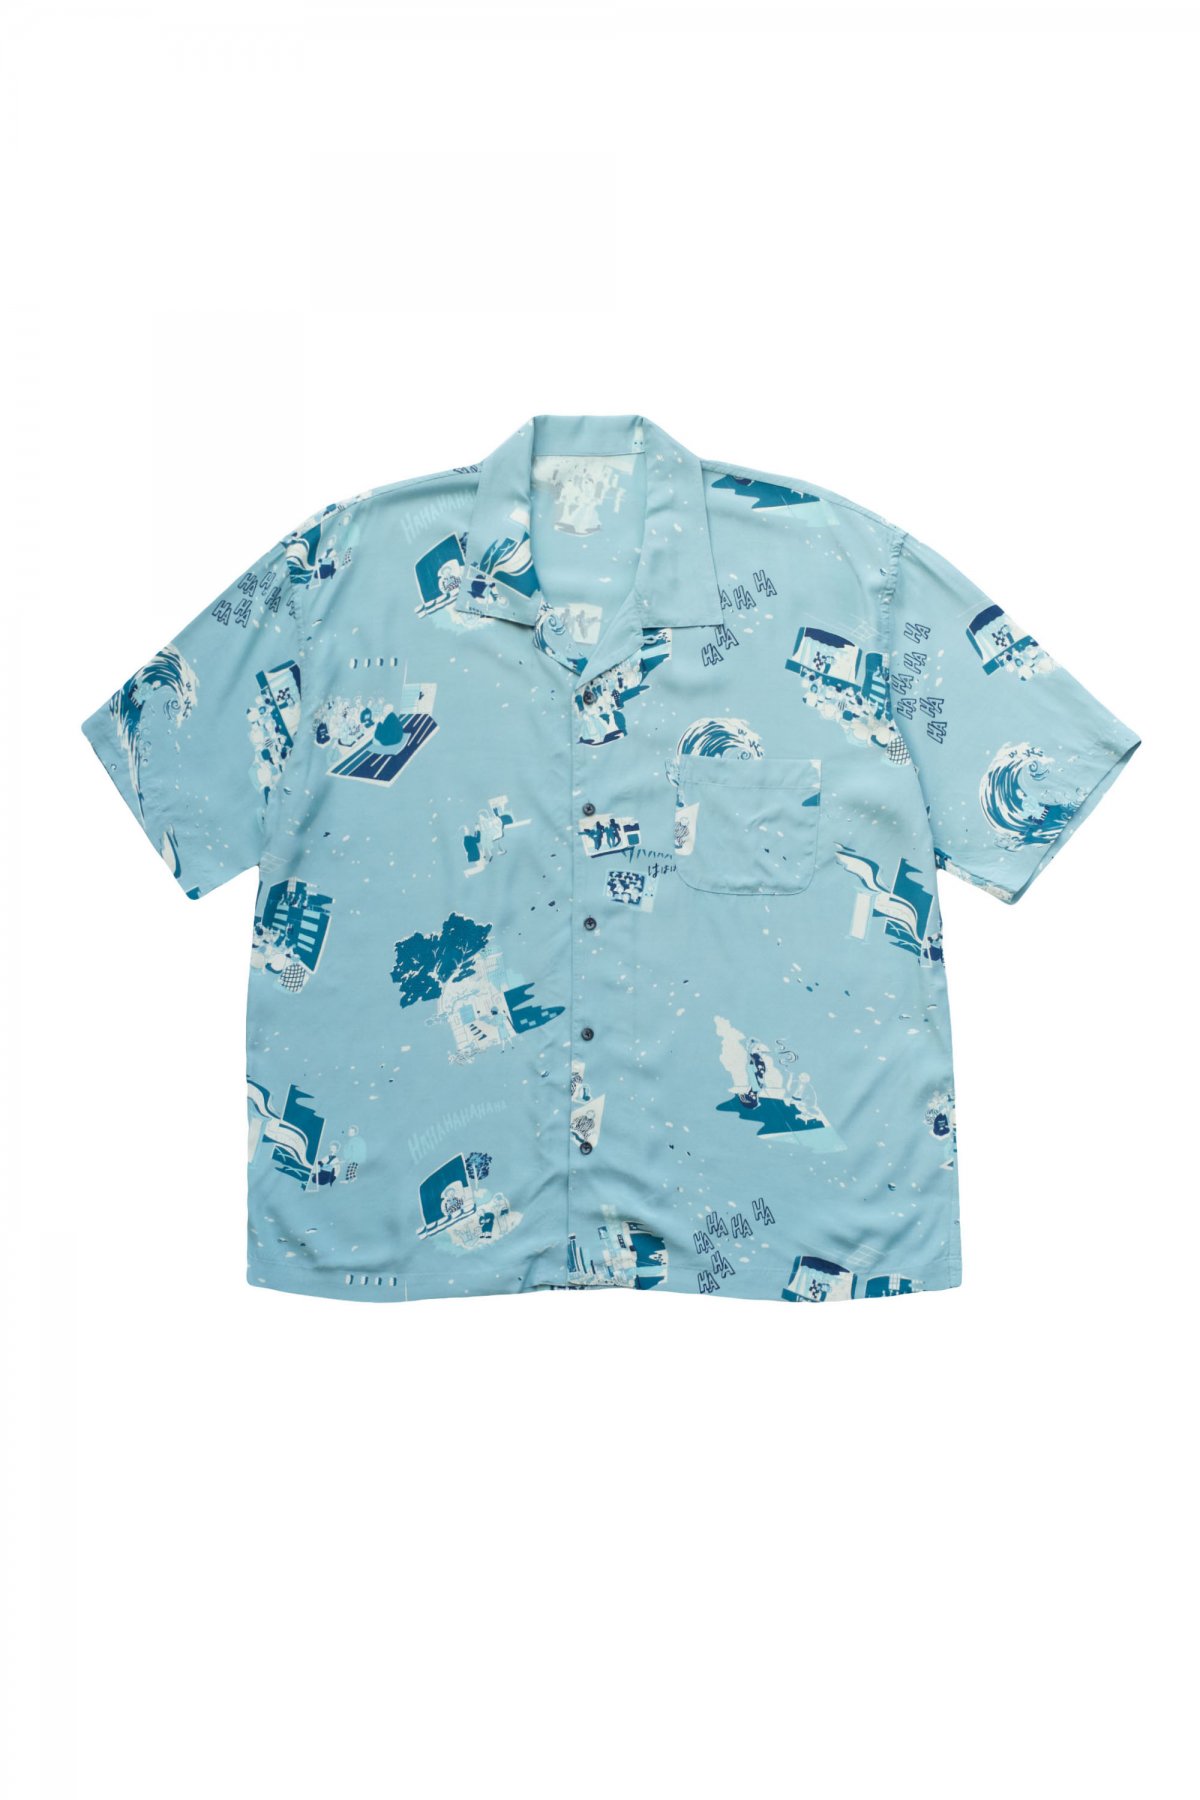 8,100円限定ポータークラシック aloha long shirt XL